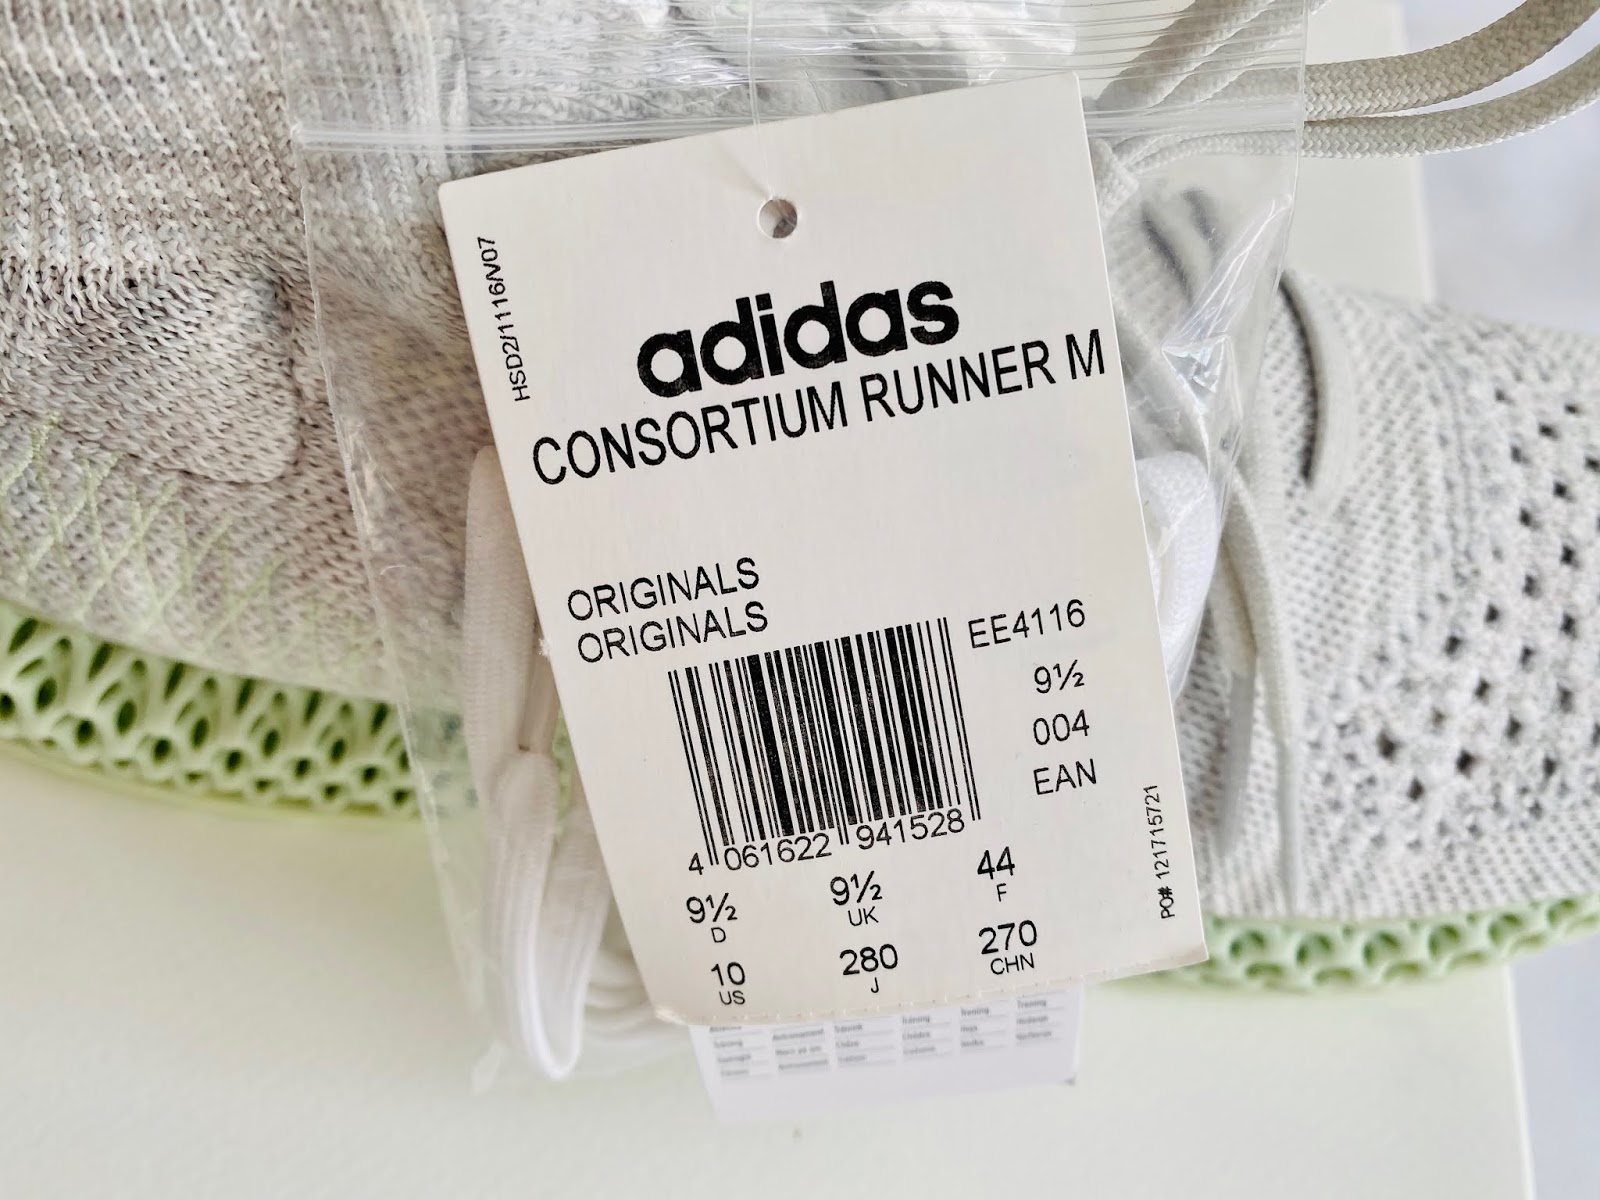 adidas consortium runner mid 4d sizing